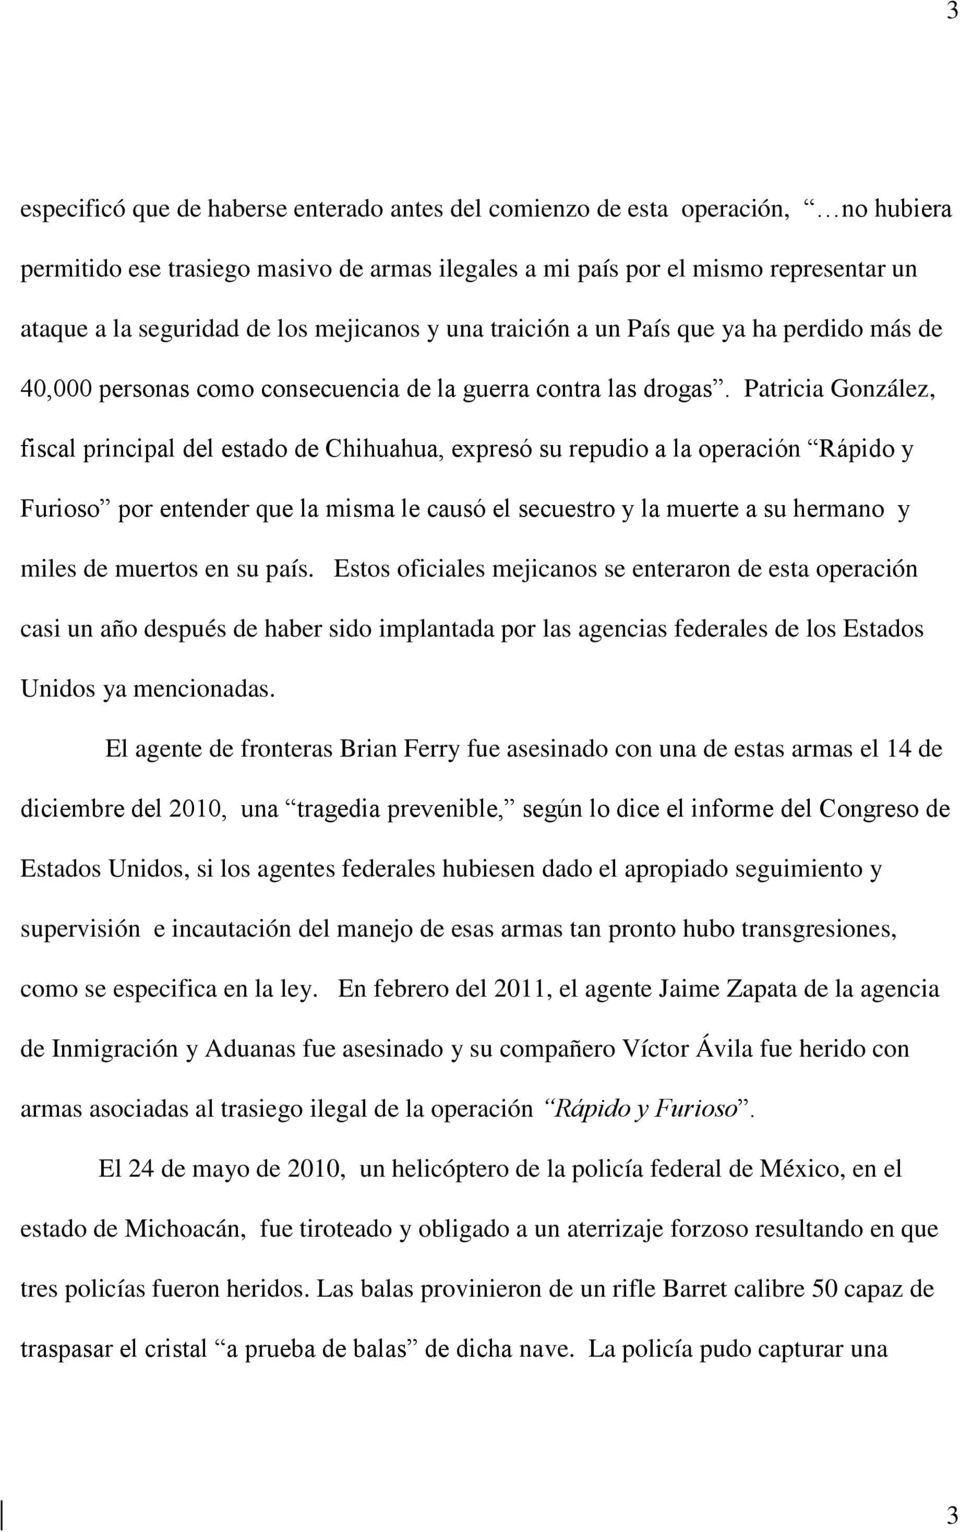 Patricia González, fiscal principal del estado de Chihuahua, expresó su repudio a la operación Rápido y Furioso por entender que la misma le causó el secuestro y la muerte a su hermano y miles de